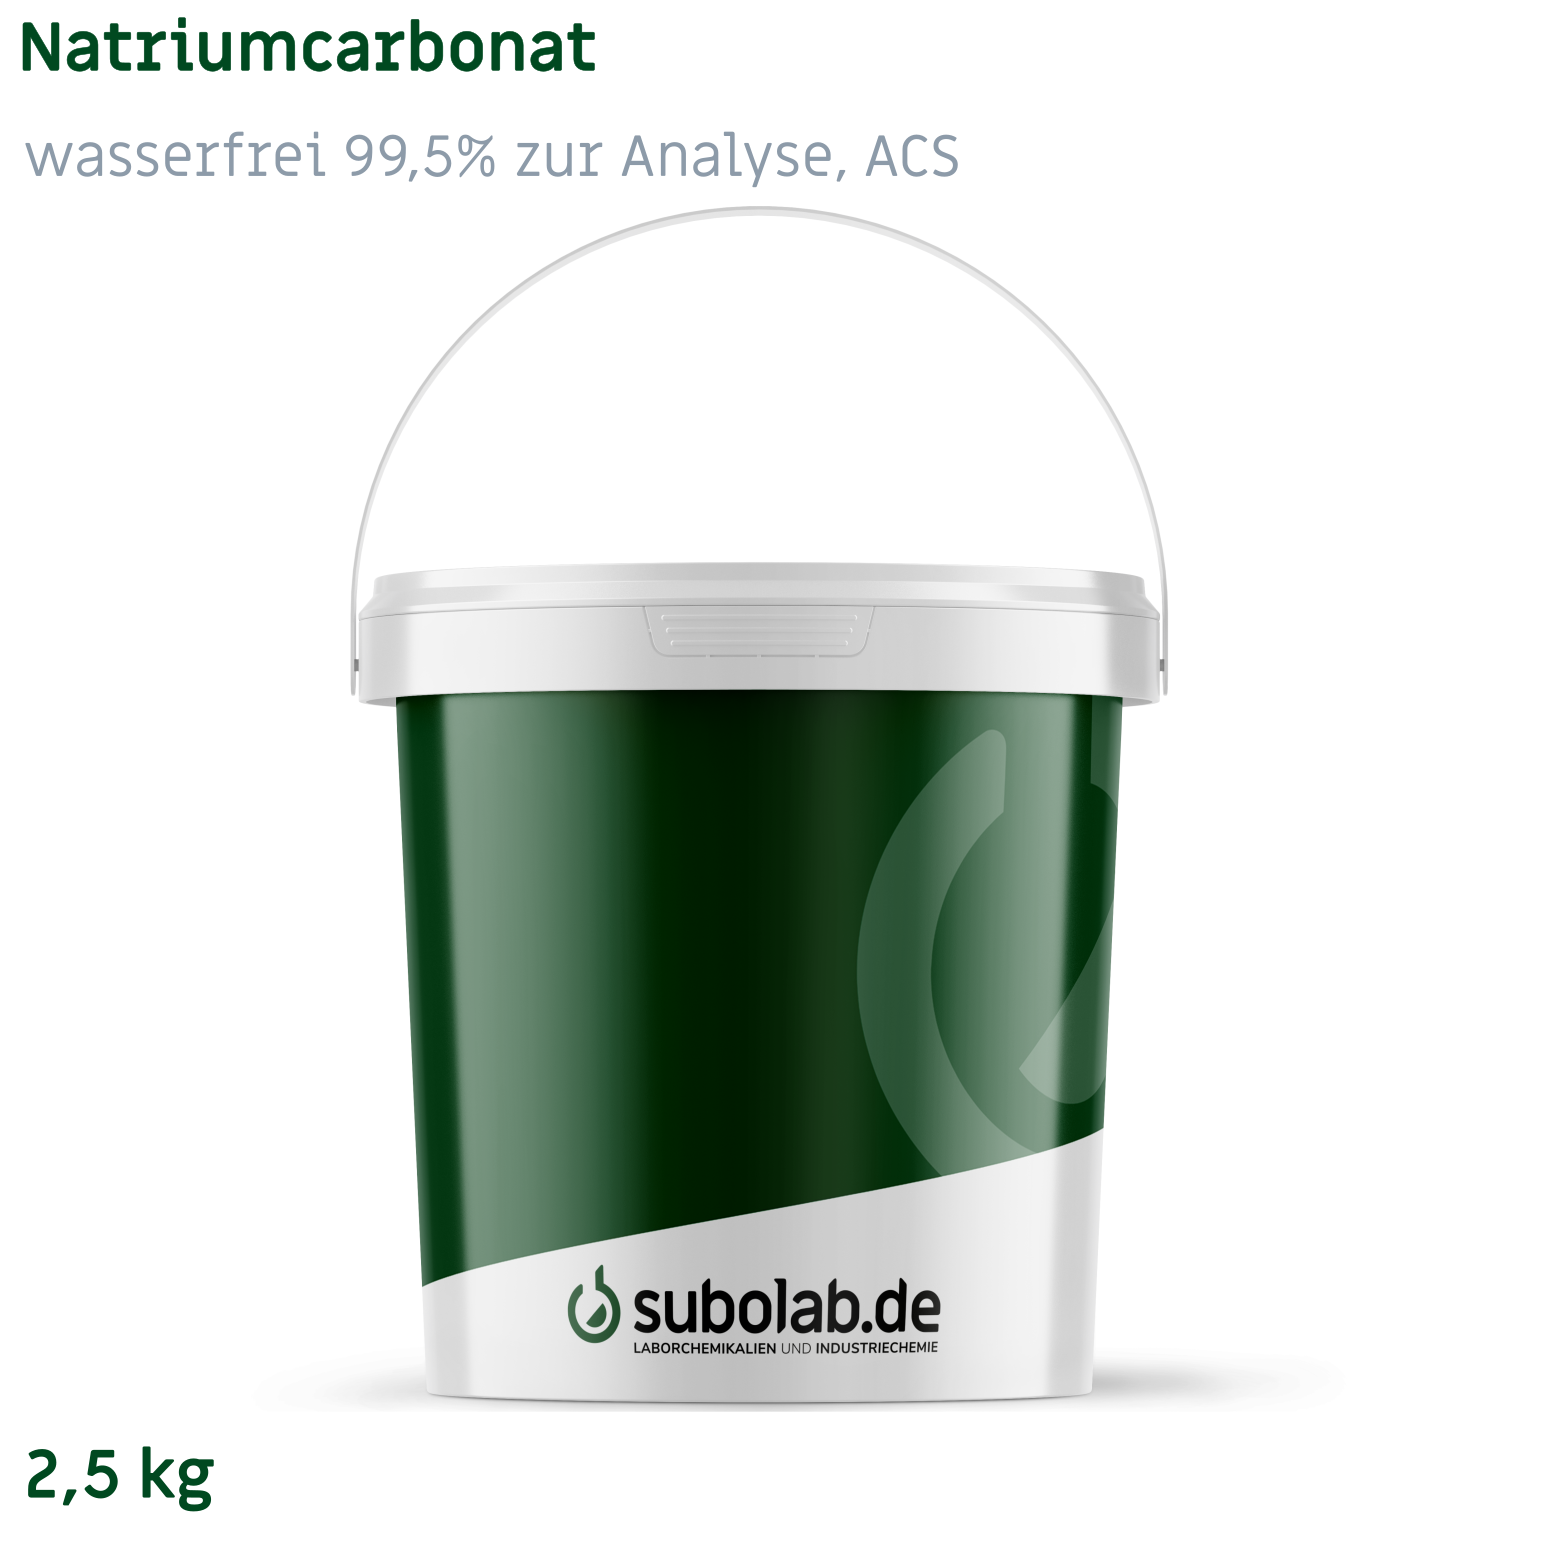 Bild von Natriumcarbonat - wasserfrei 99,5% zur Analyse, ACS (2,5 kg)